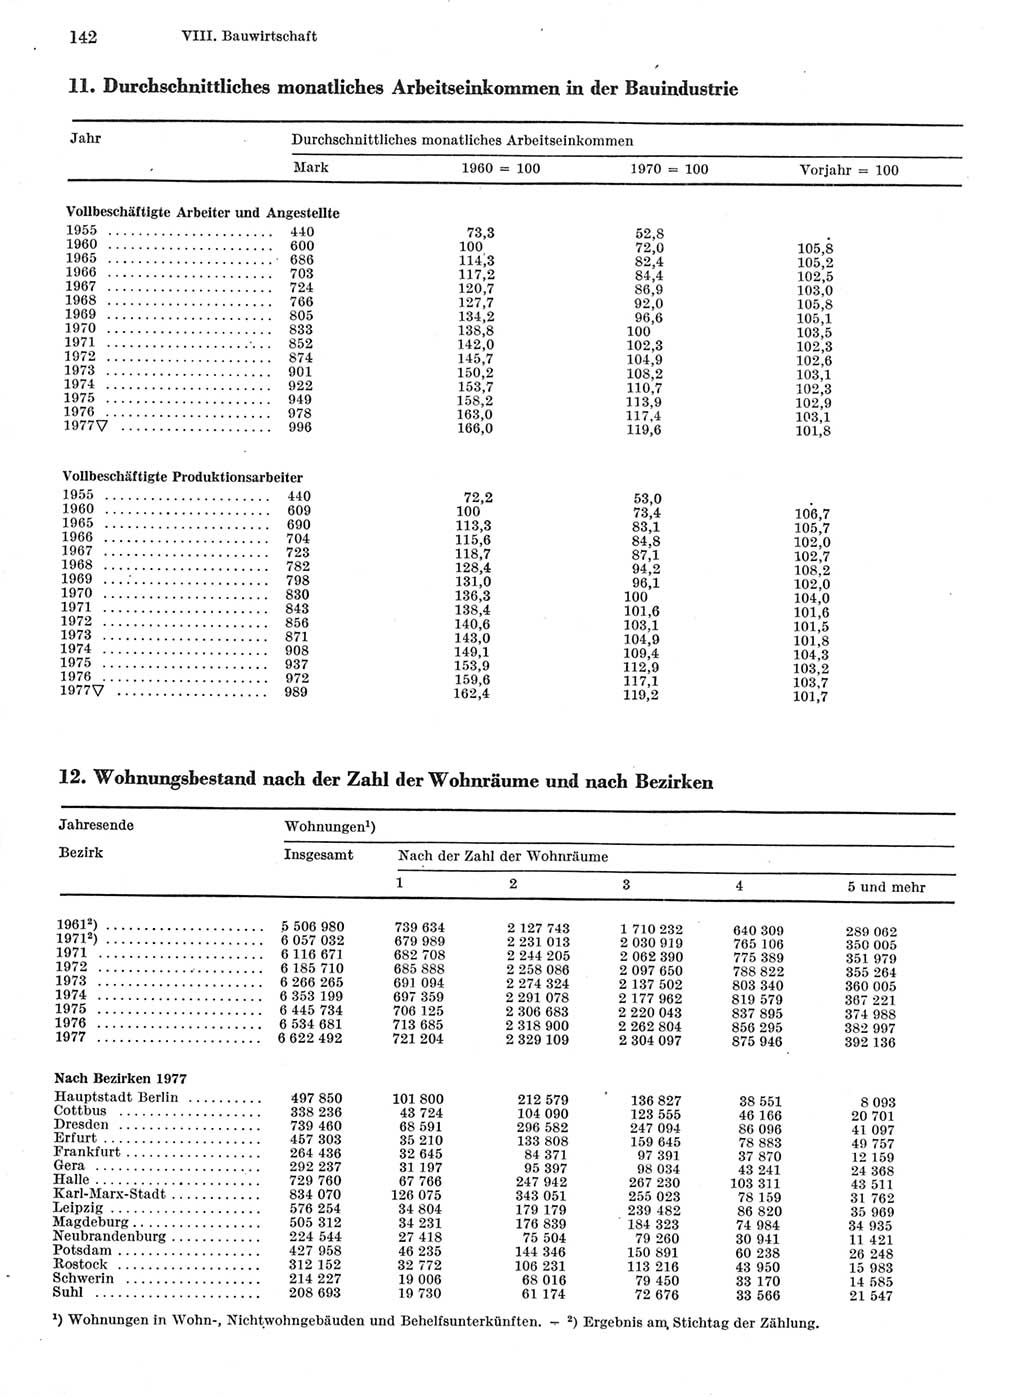 Statistisches Jahrbuch der Deutschen Demokratischen Republik (DDR) 1978, Seite 142 (Stat. Jb. DDR 1978, S. 142)